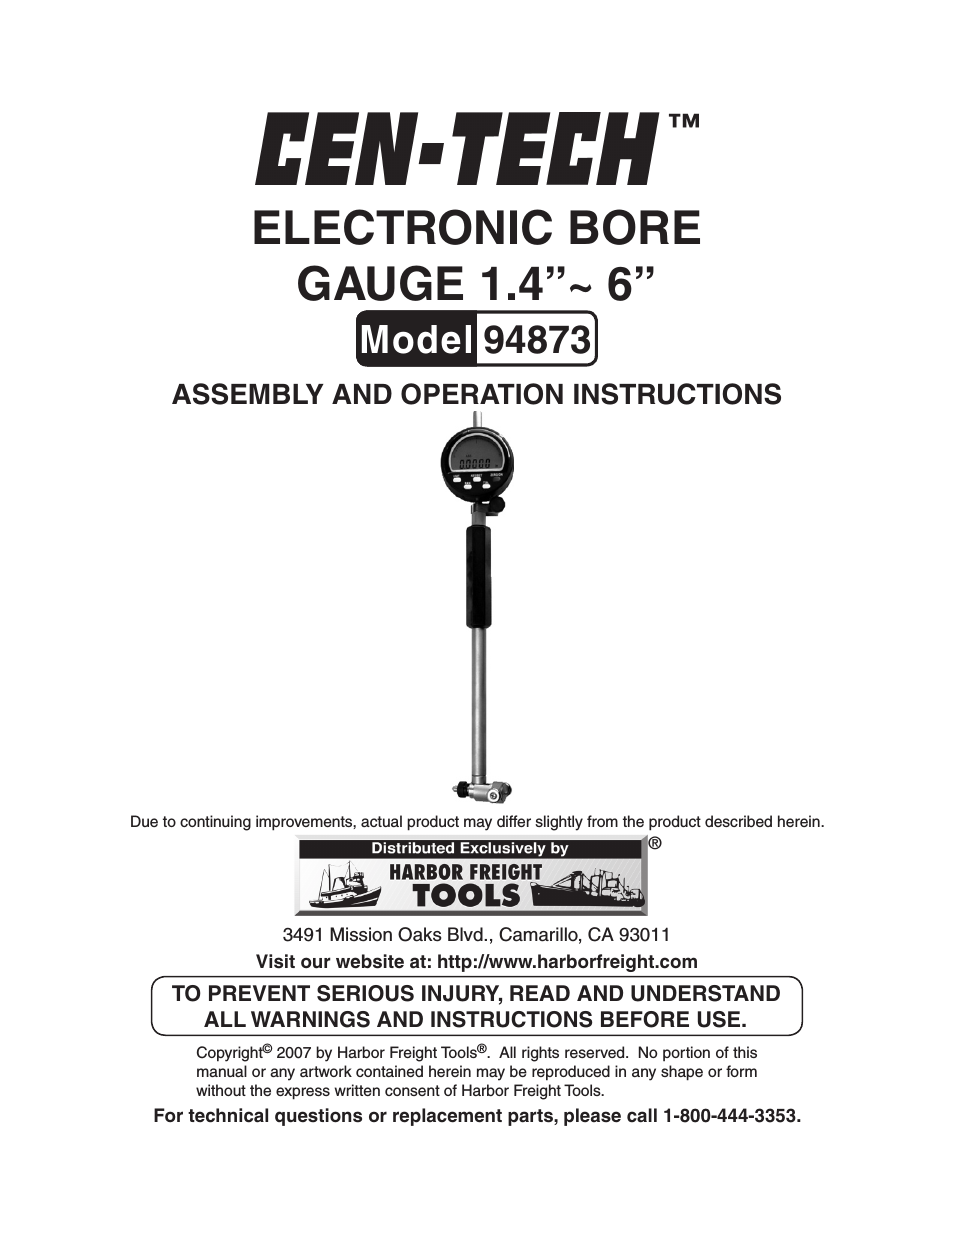 ELECTRONIC BORE GAUGE 94873